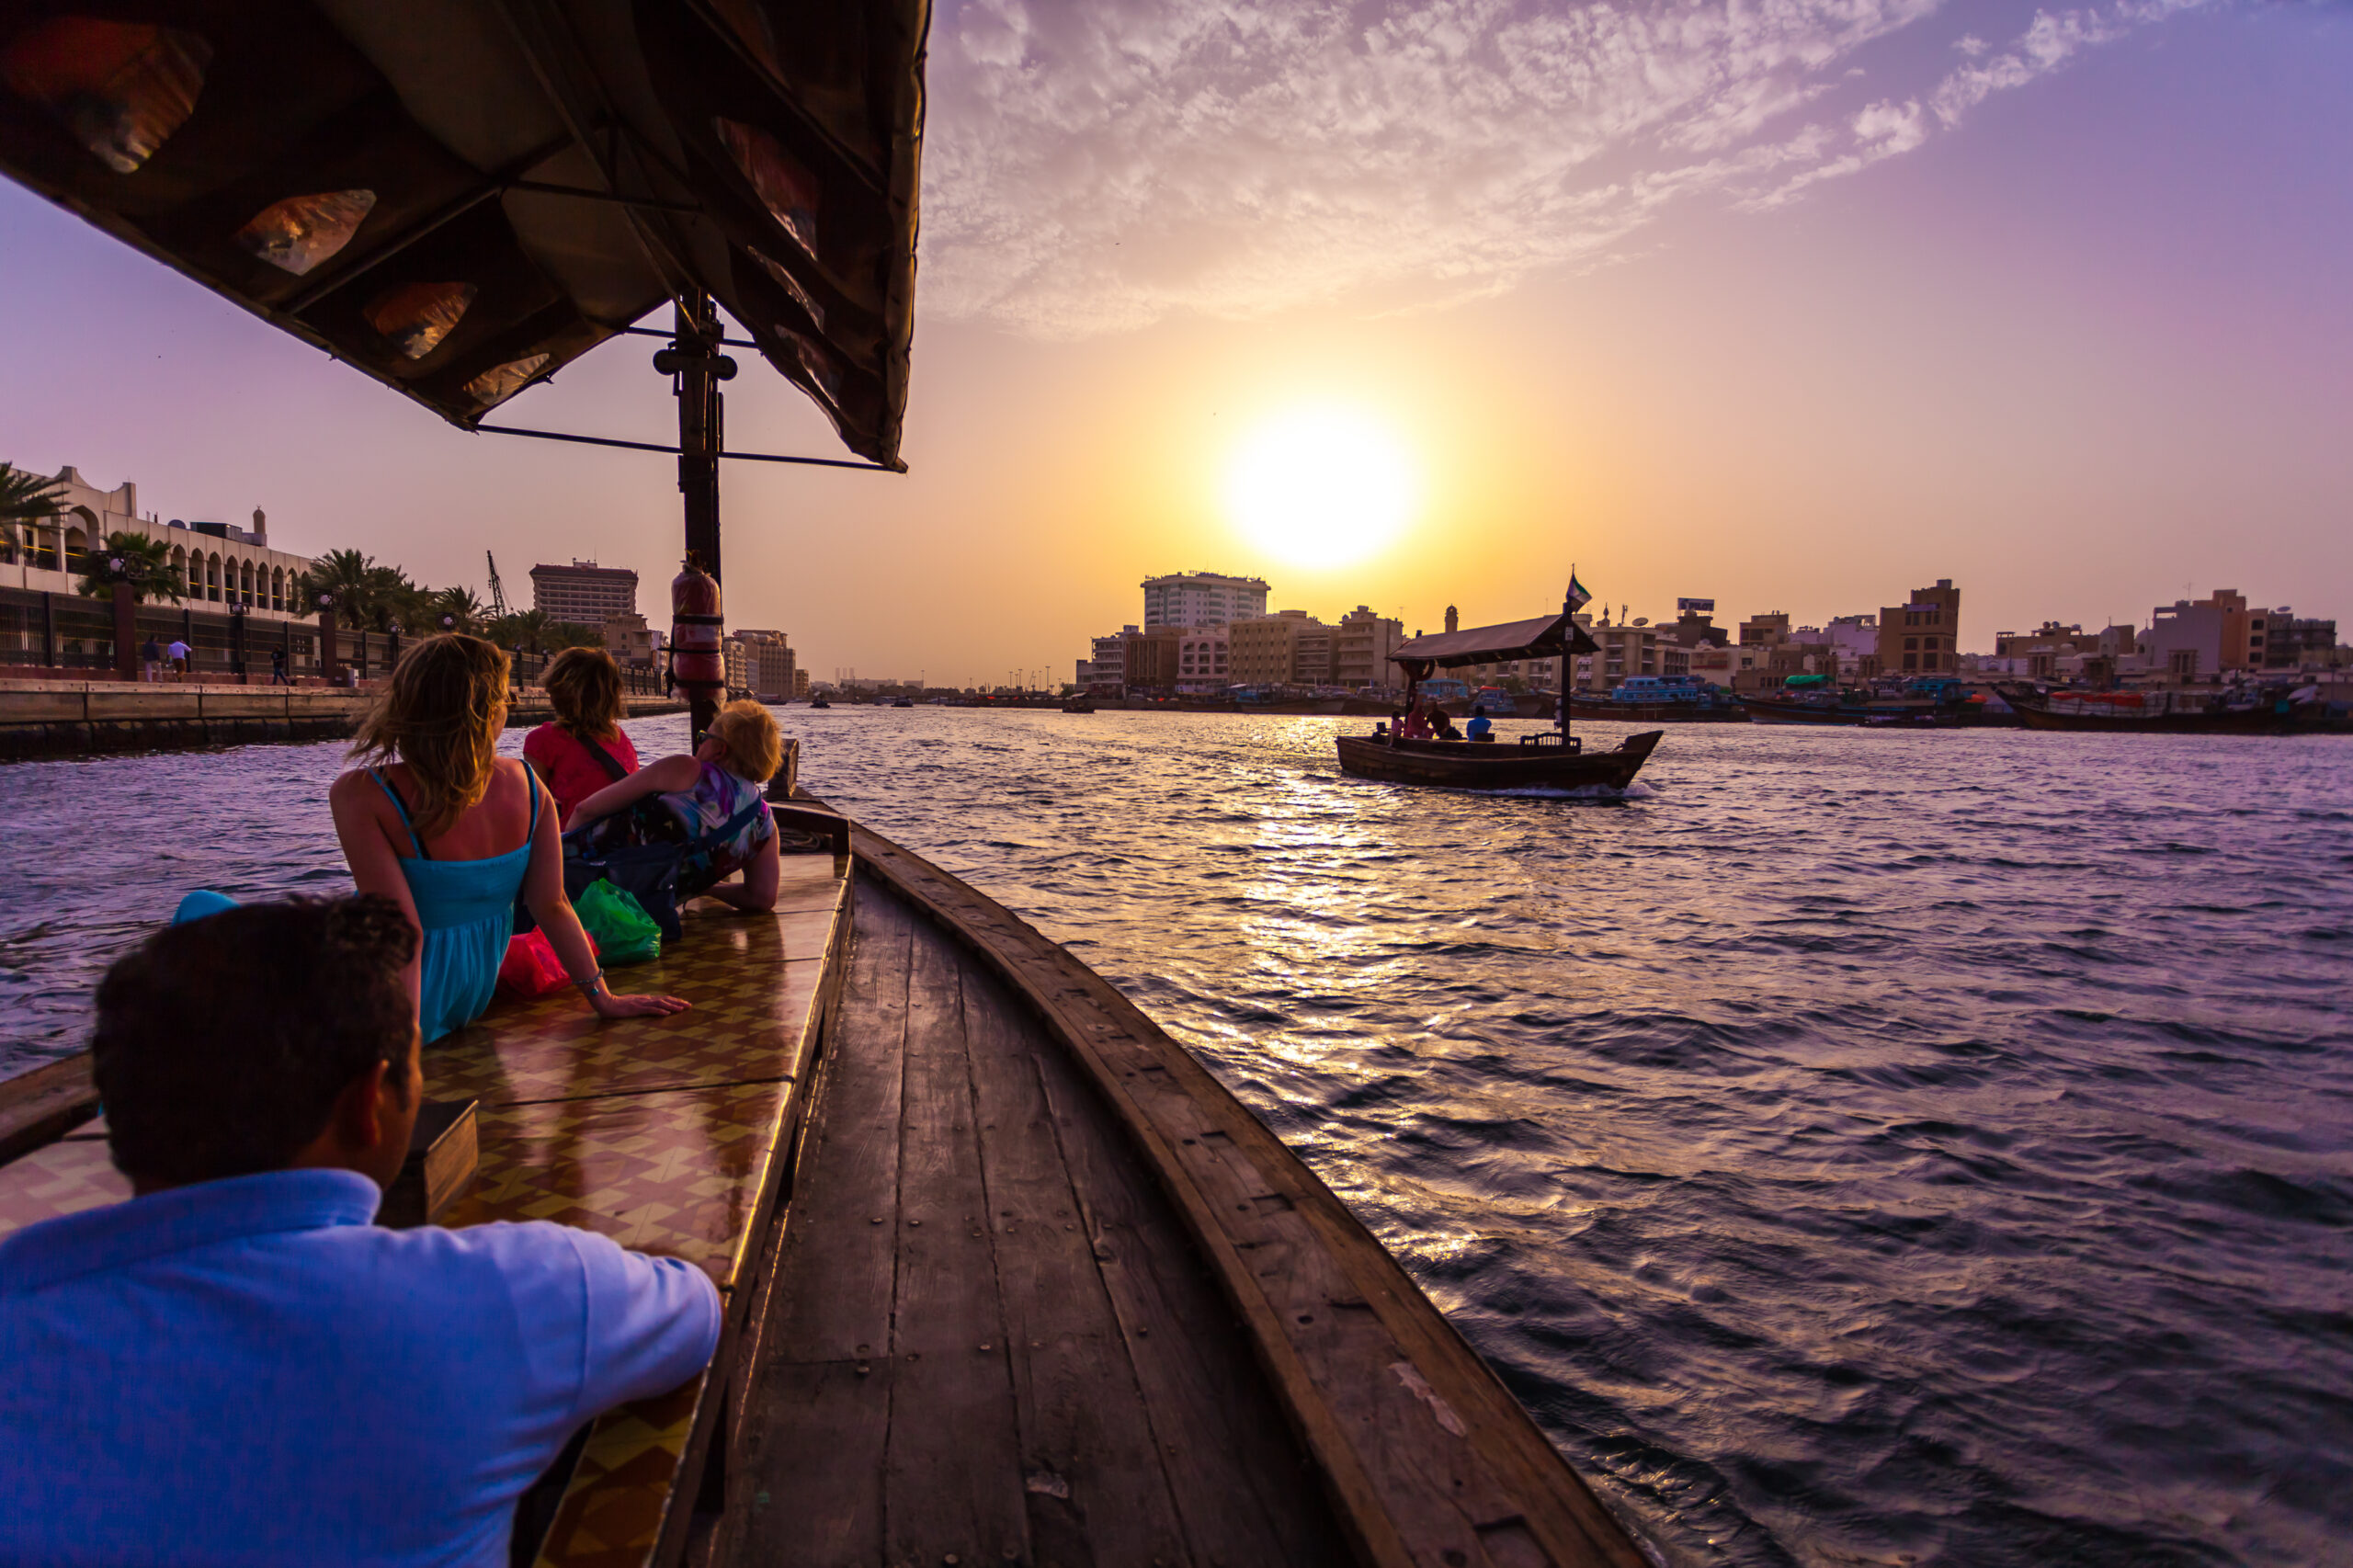 Dubai abra - Boat seat